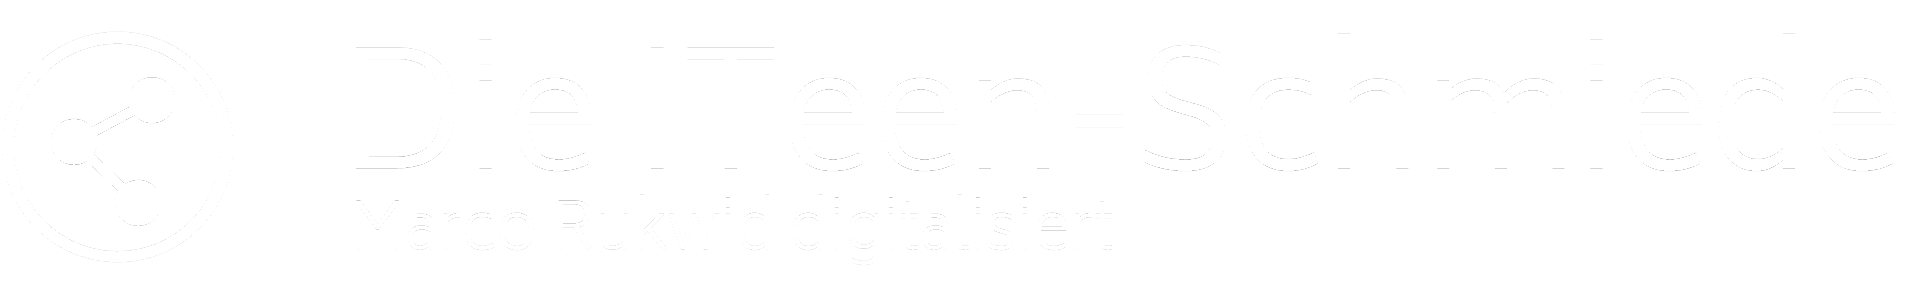 Die ITeen-Schmiede | IT-Dienstleistung & Beratung aus Albstadt